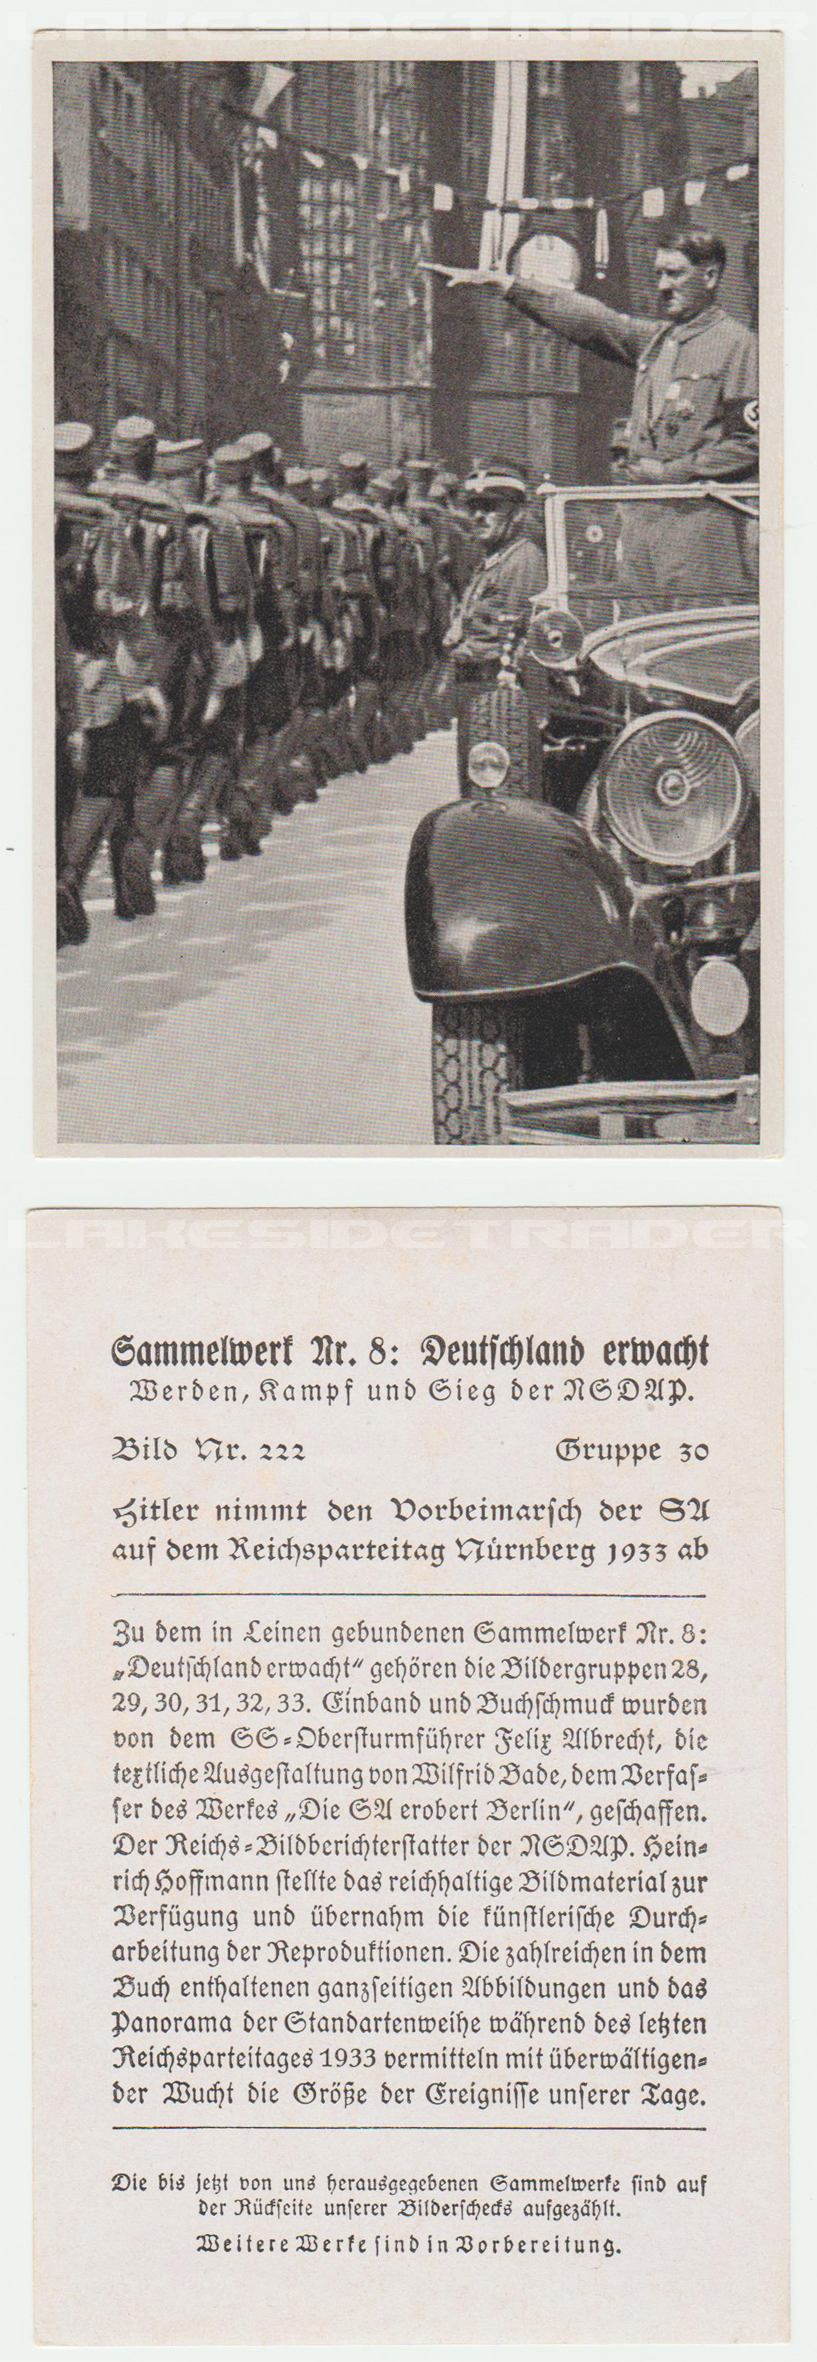 Cigarette Card - “Sammelwerk Nr. 8: Deutschland erwacht”